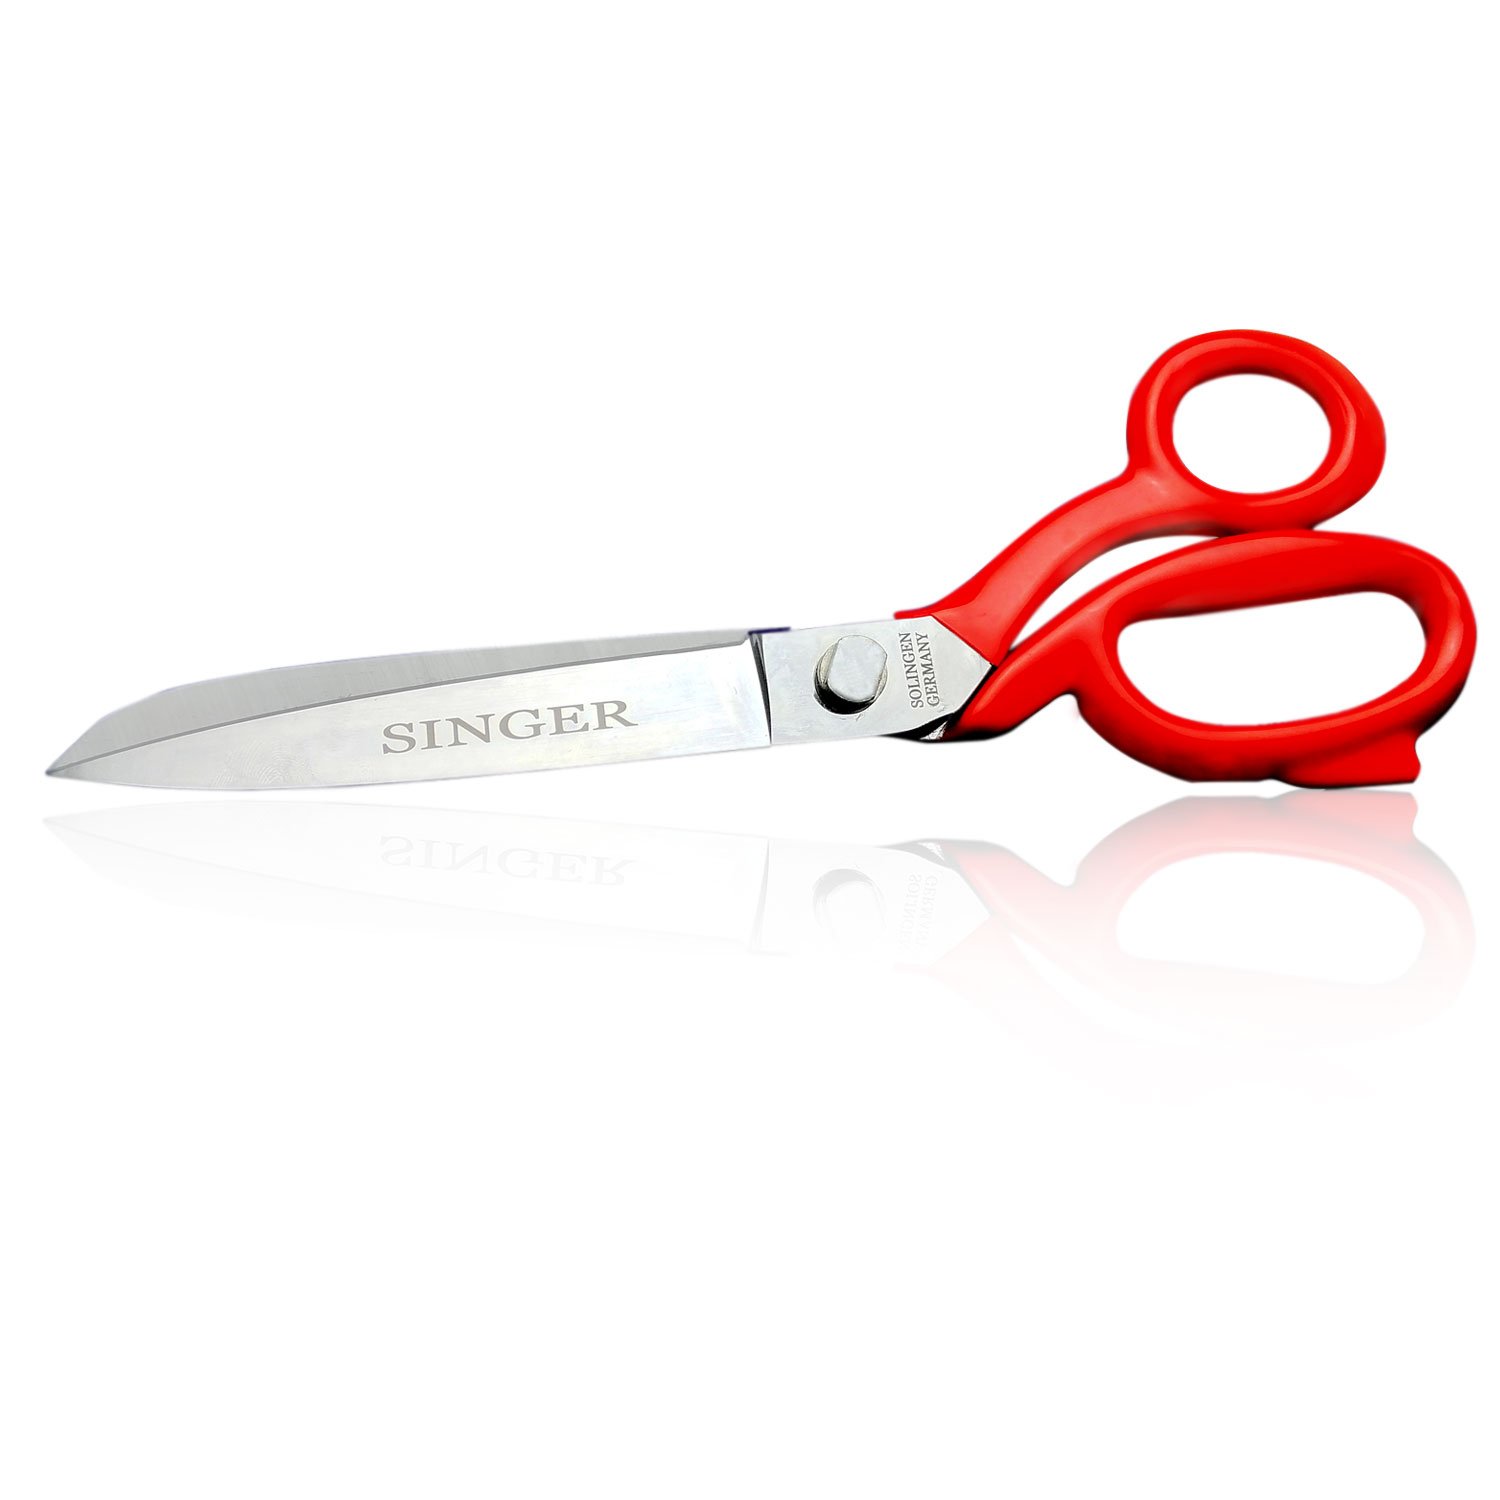 singer scissors